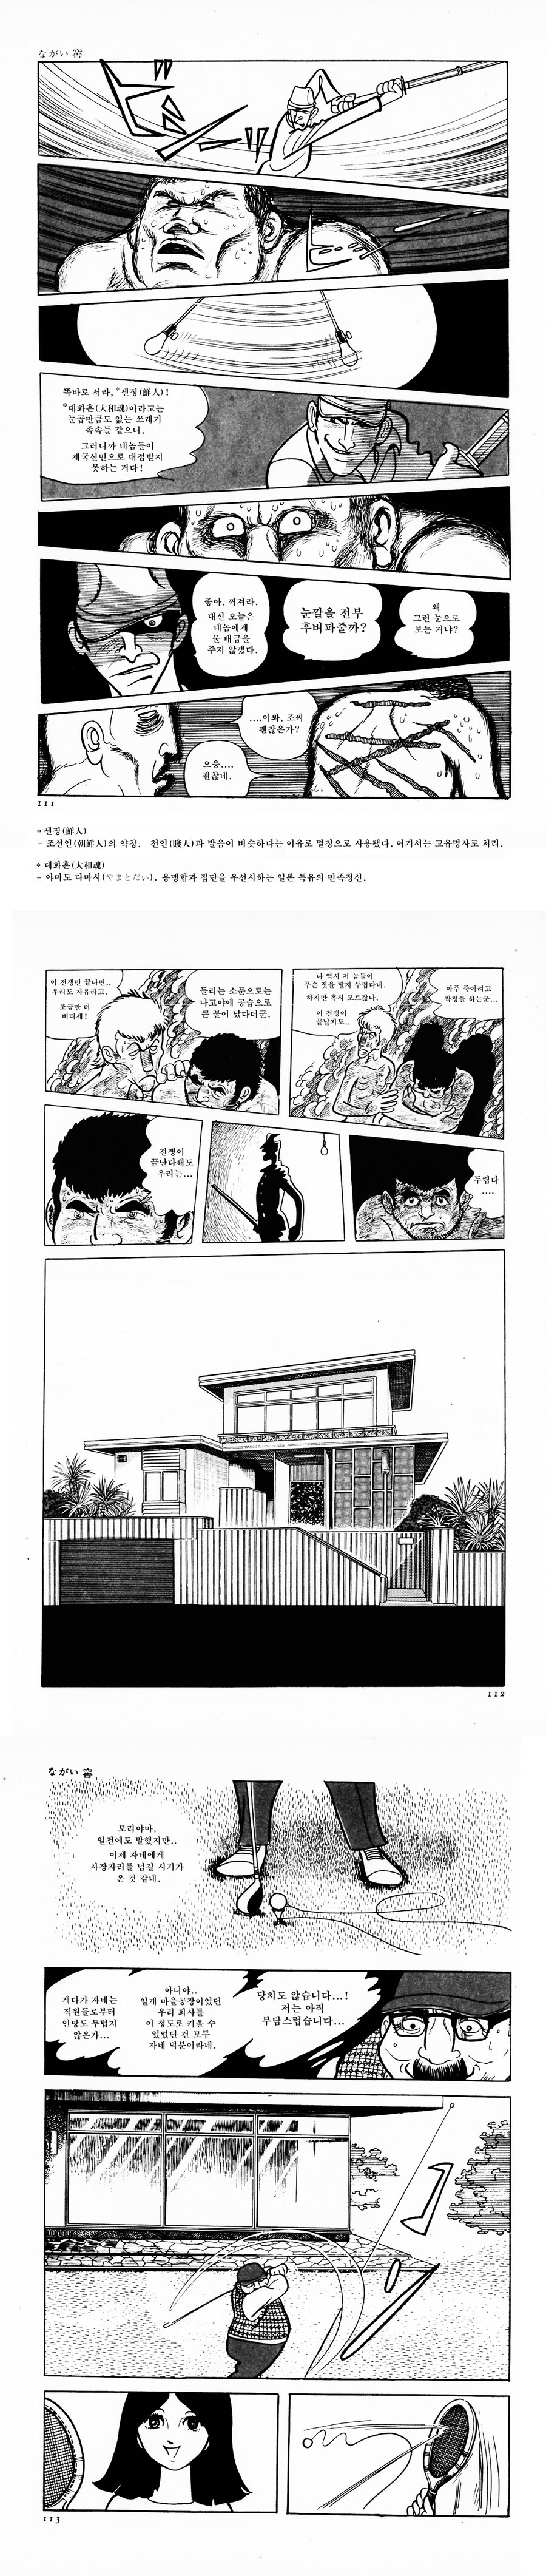 ある日本の漫画家が描いた解放後の朝鮮人たちの人生manga